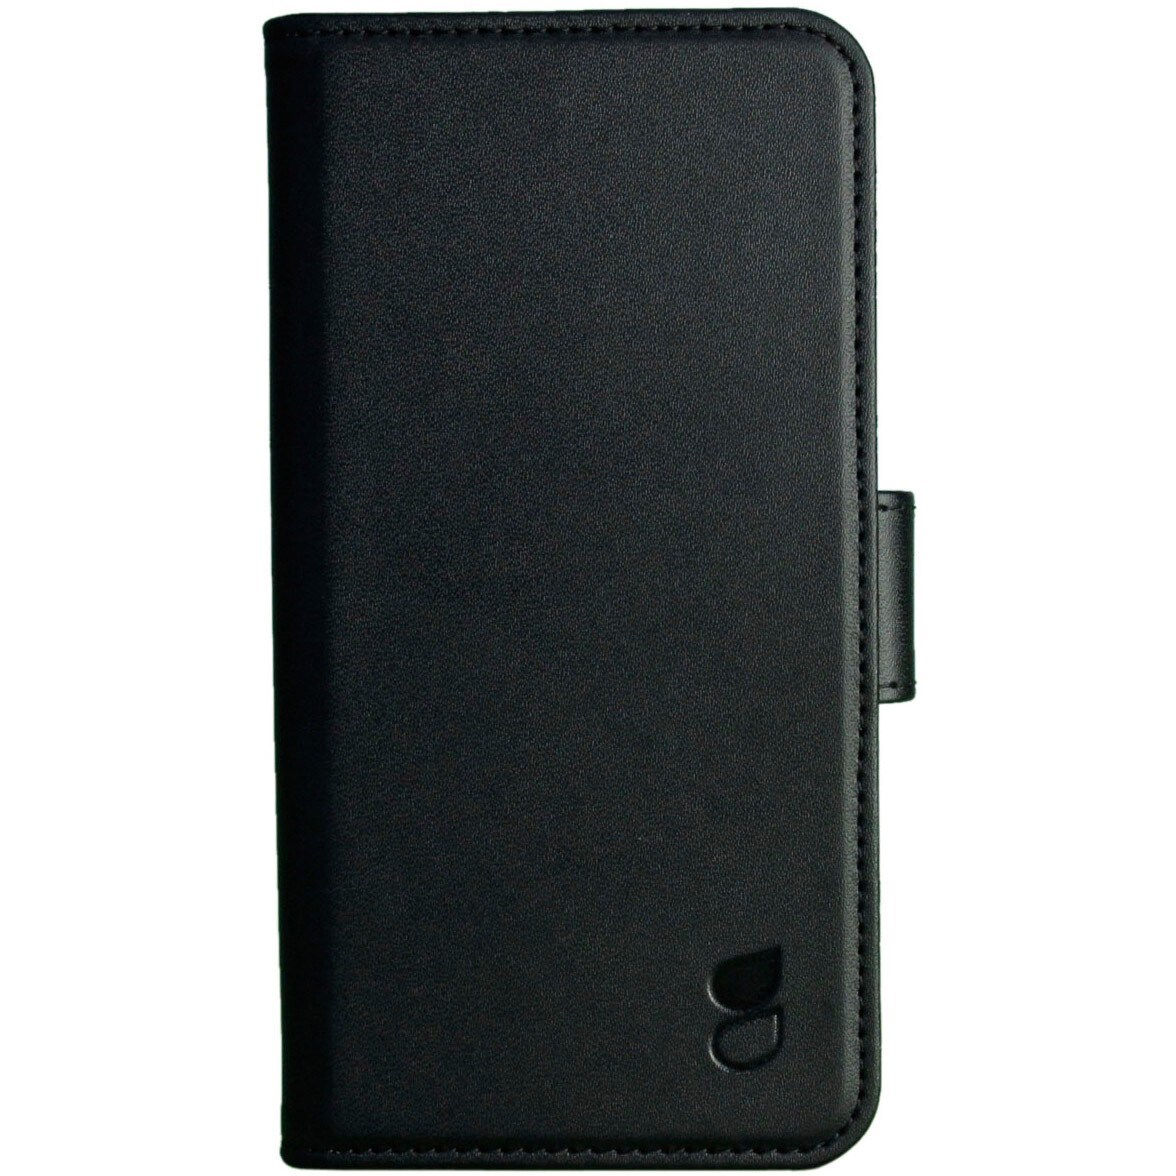 Gear iPhone 7 Magnet plånboksfodral (svart) - Skal och Fodral ...